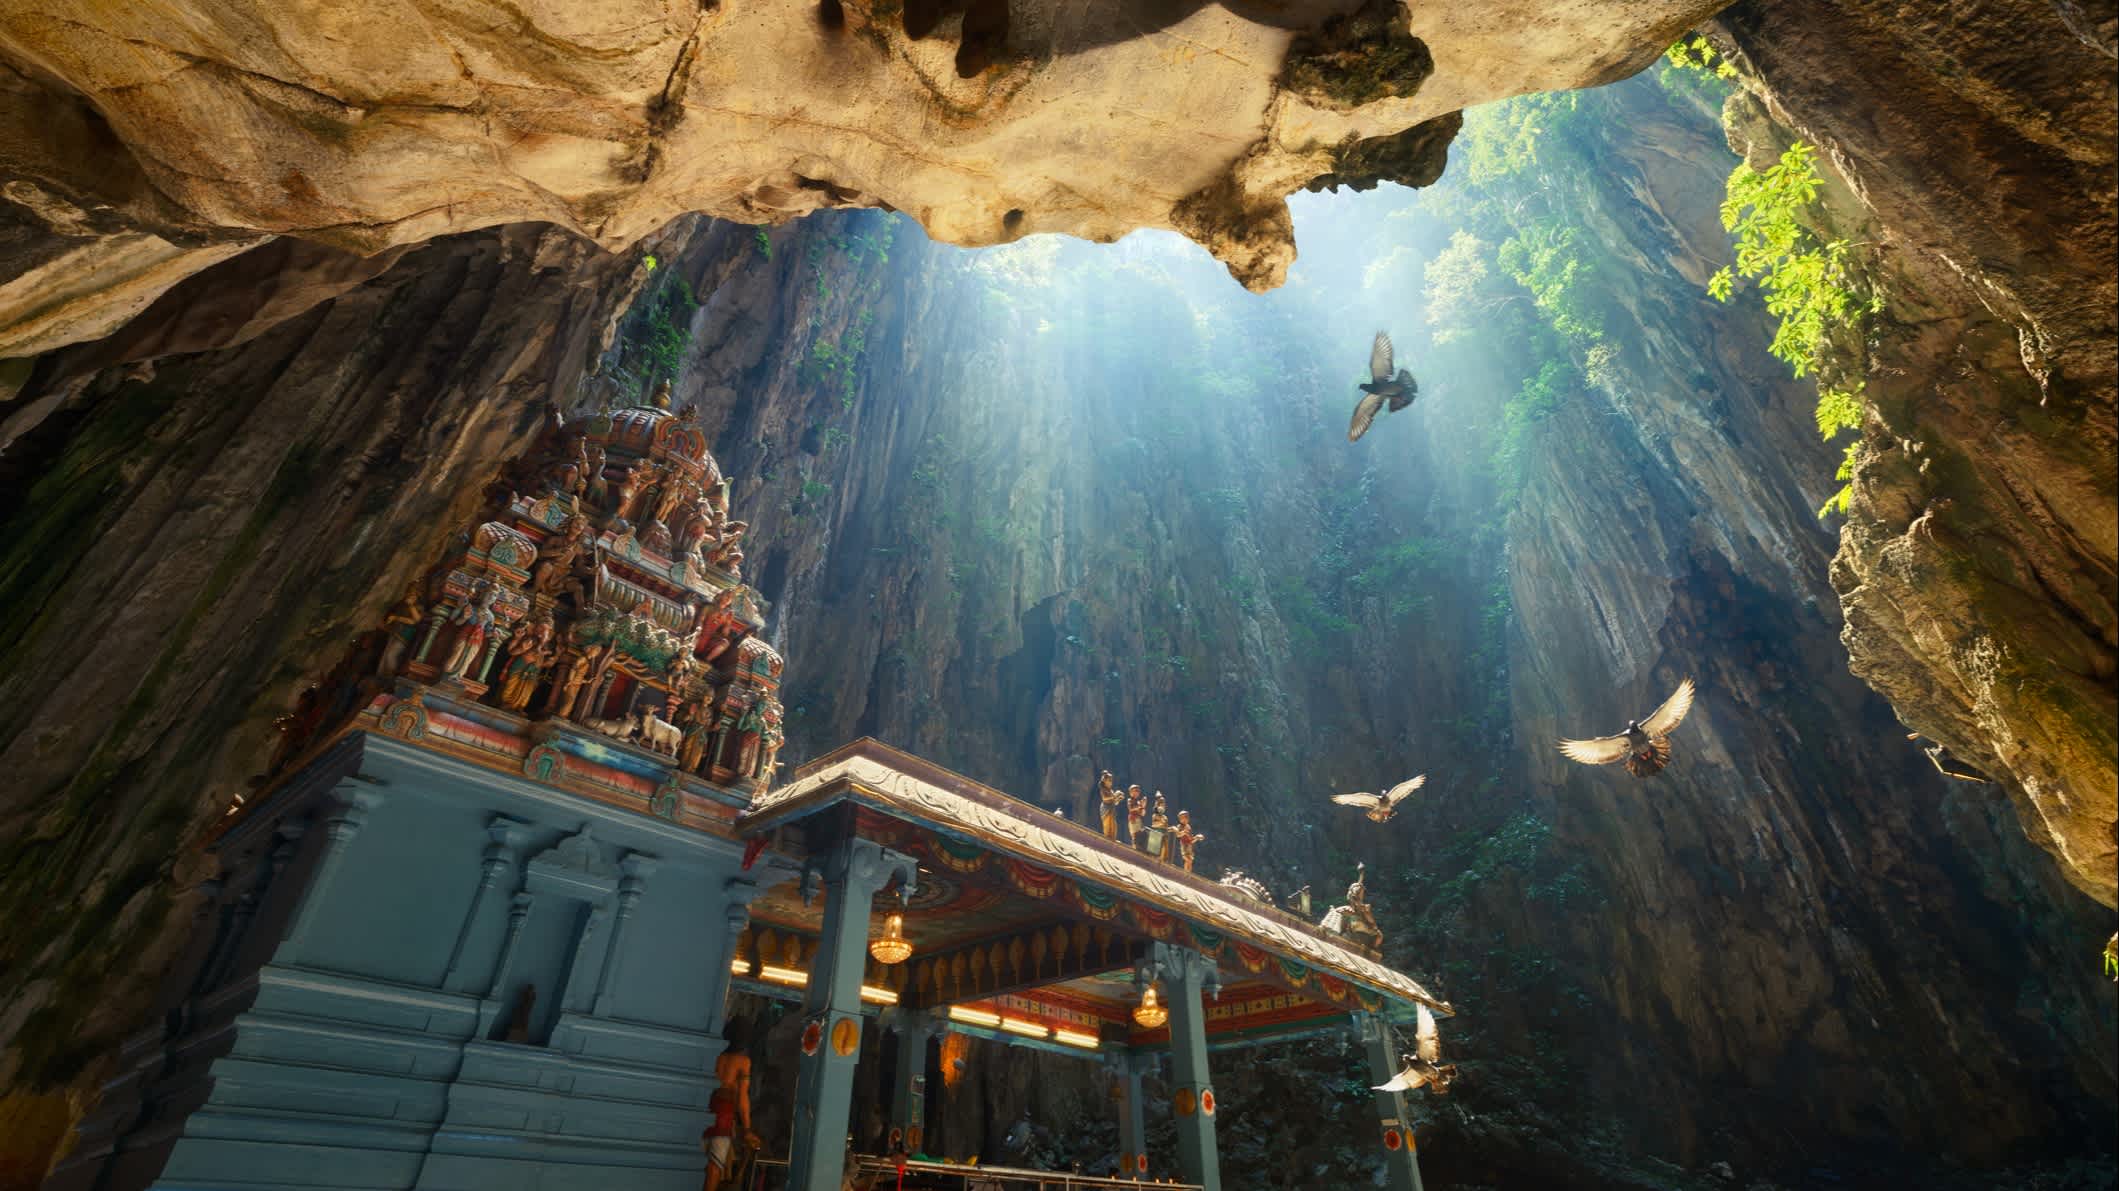 Temple à l'intérieur de la grotte, grottes de Batu, Kuala Lumpur, Malaisie